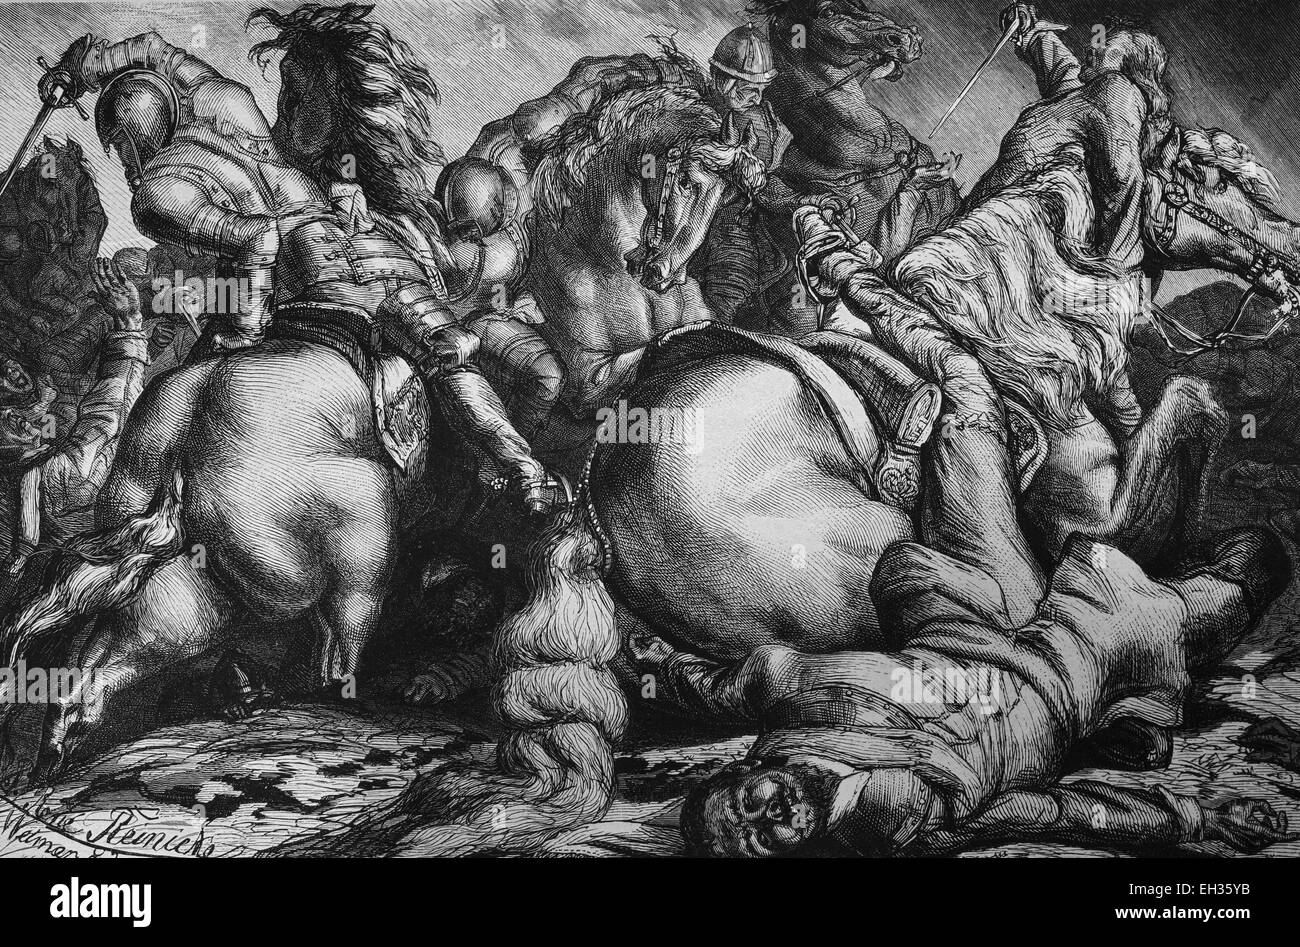 La mort de Gustave Adolphe, Gustave II Adolphe, 1594-1632, à la bataille de Lützen, à partir de la famille régnante de Vasa, Roi de Suède à partir de 1611-1632, gravure sur bois, gravure historique, 1880 Banque D'Images